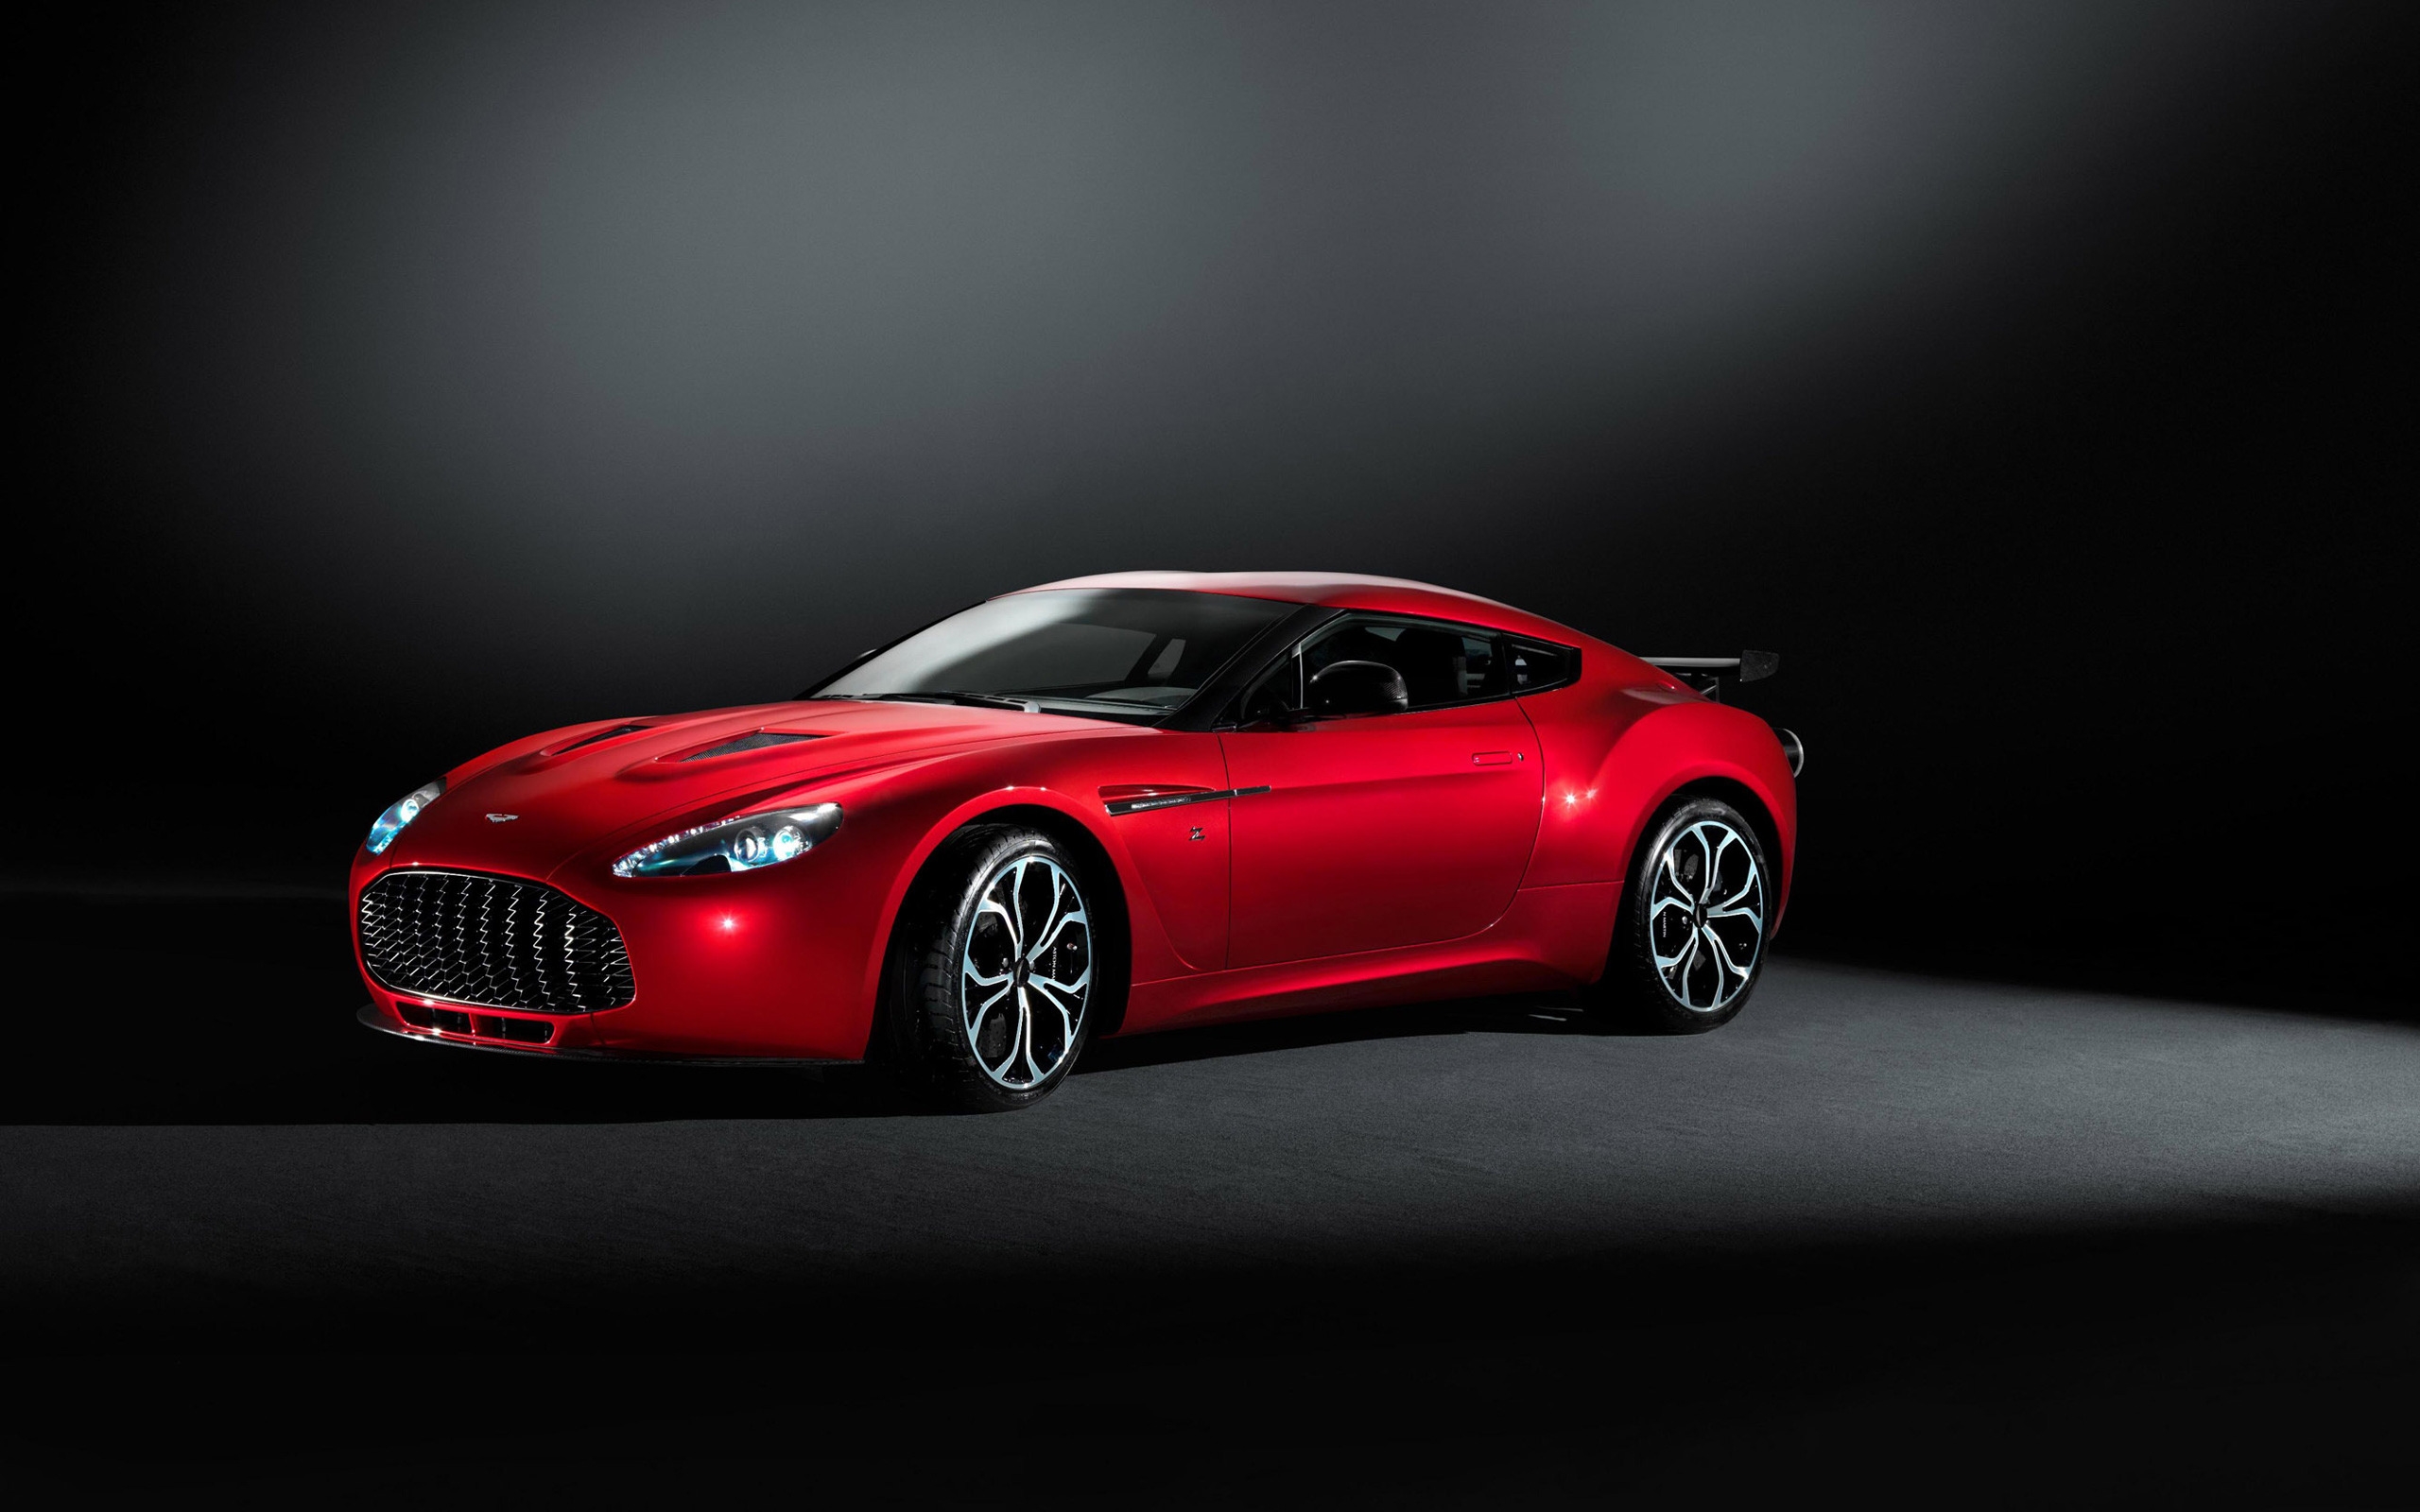 2013 Aston Martin V12 Zagato for 2560 x 1600 widescreen resolution